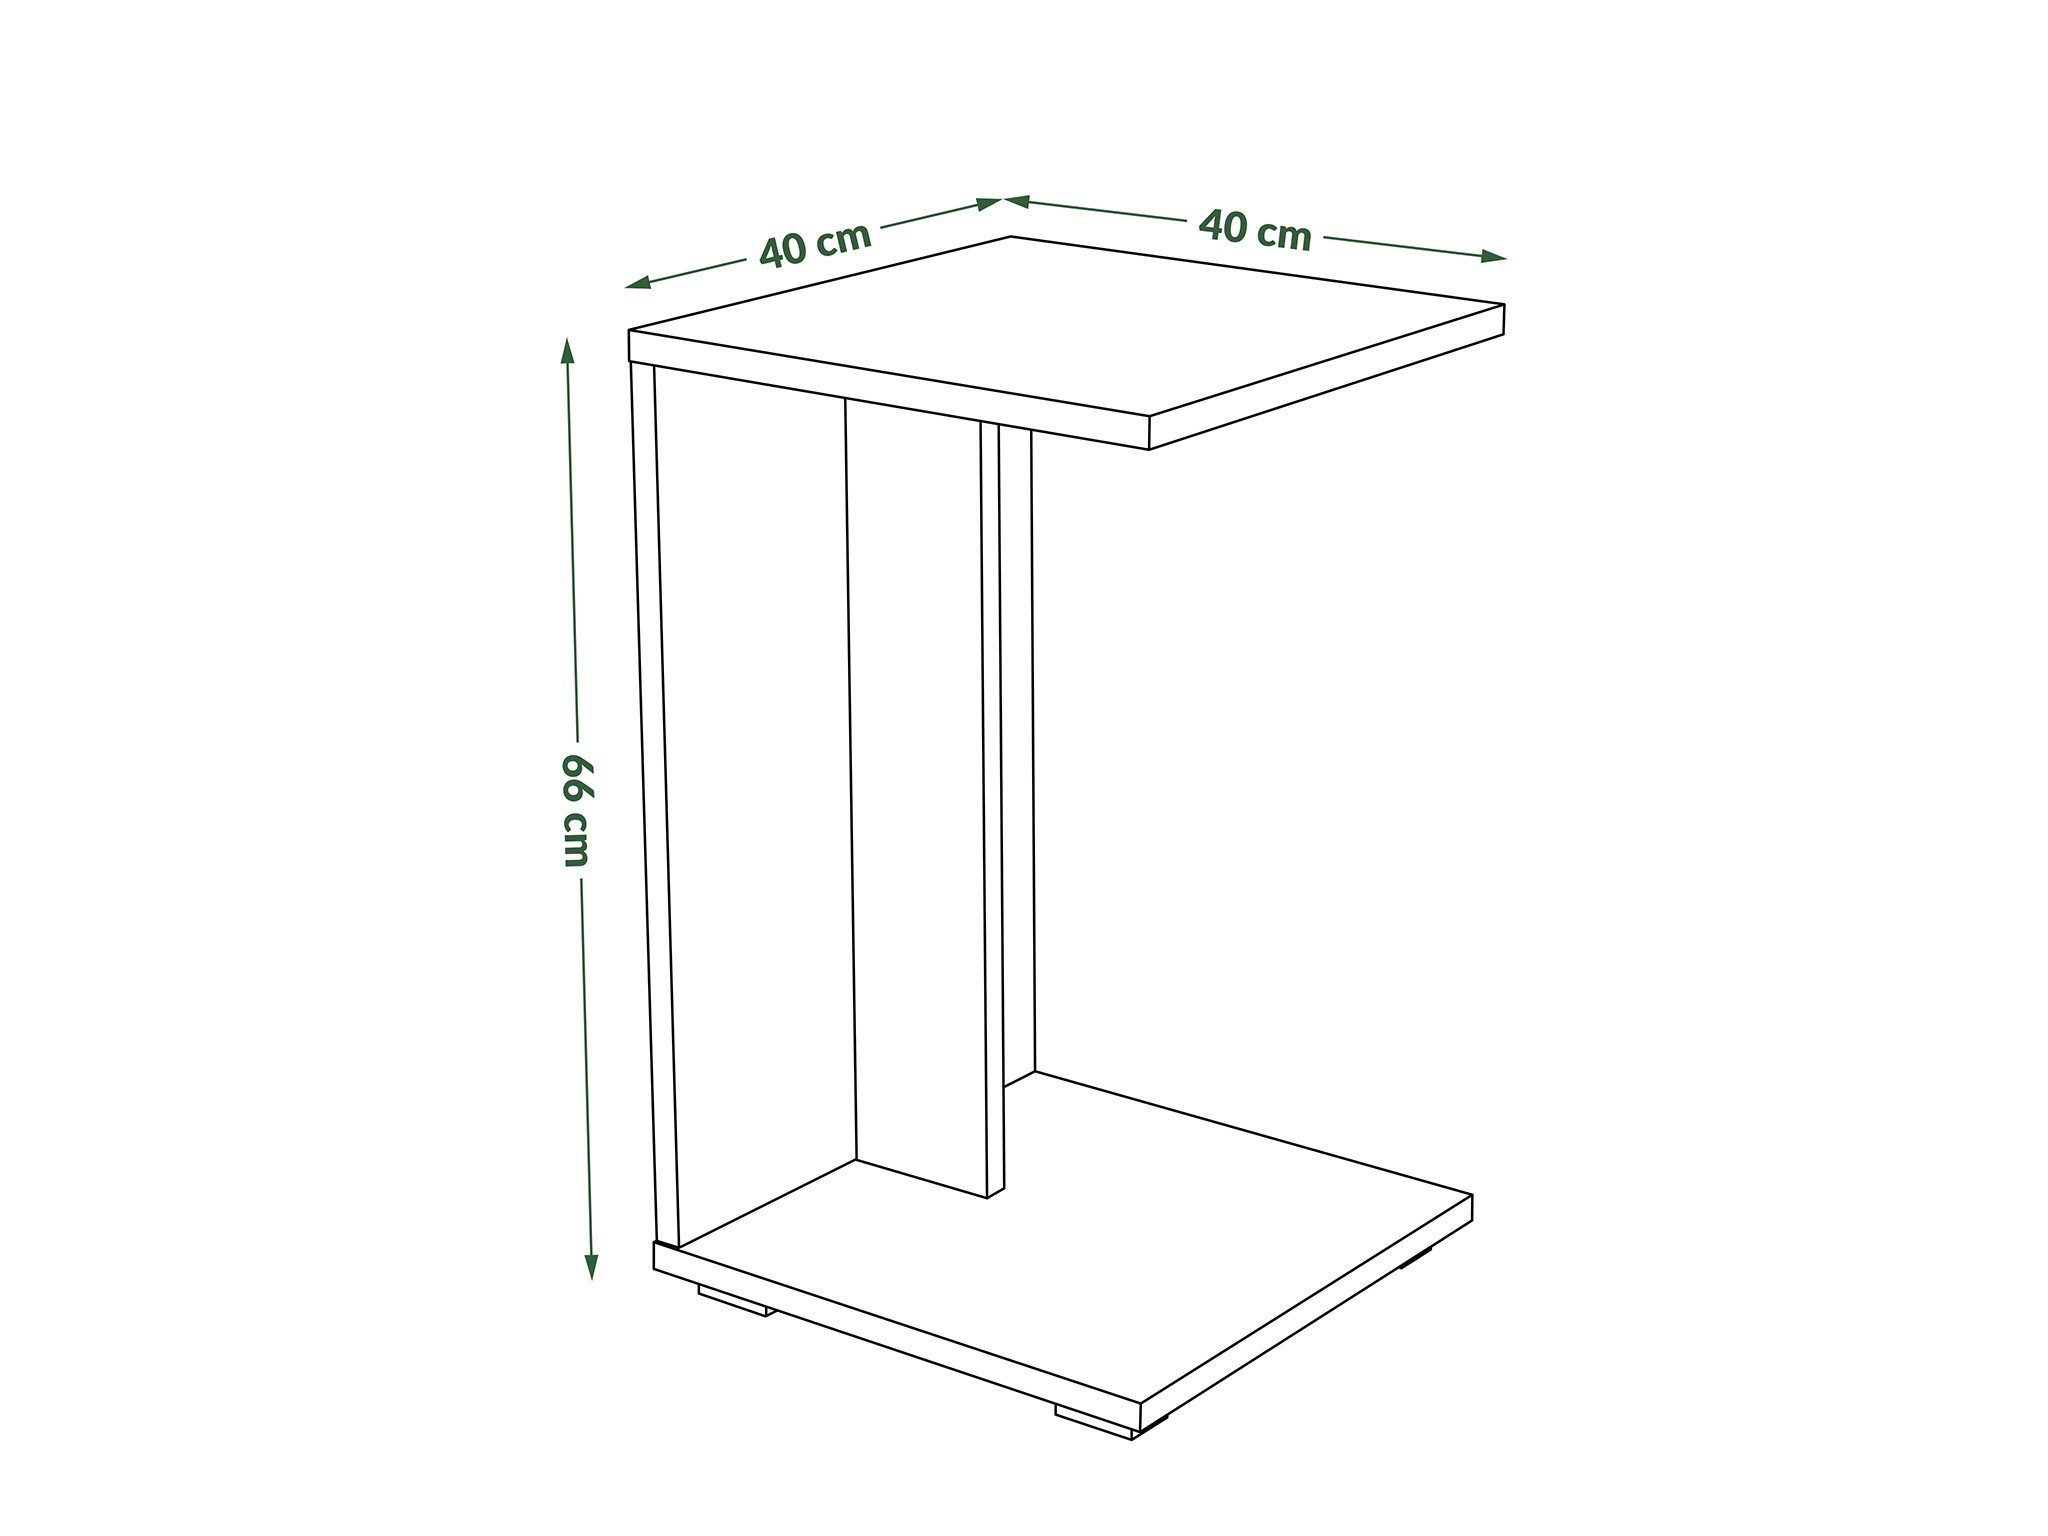 Hugo Design Beistelltisch Tisch designimpex mit Beistelltisch Erle Notebooktisch Rollen Ecktisch